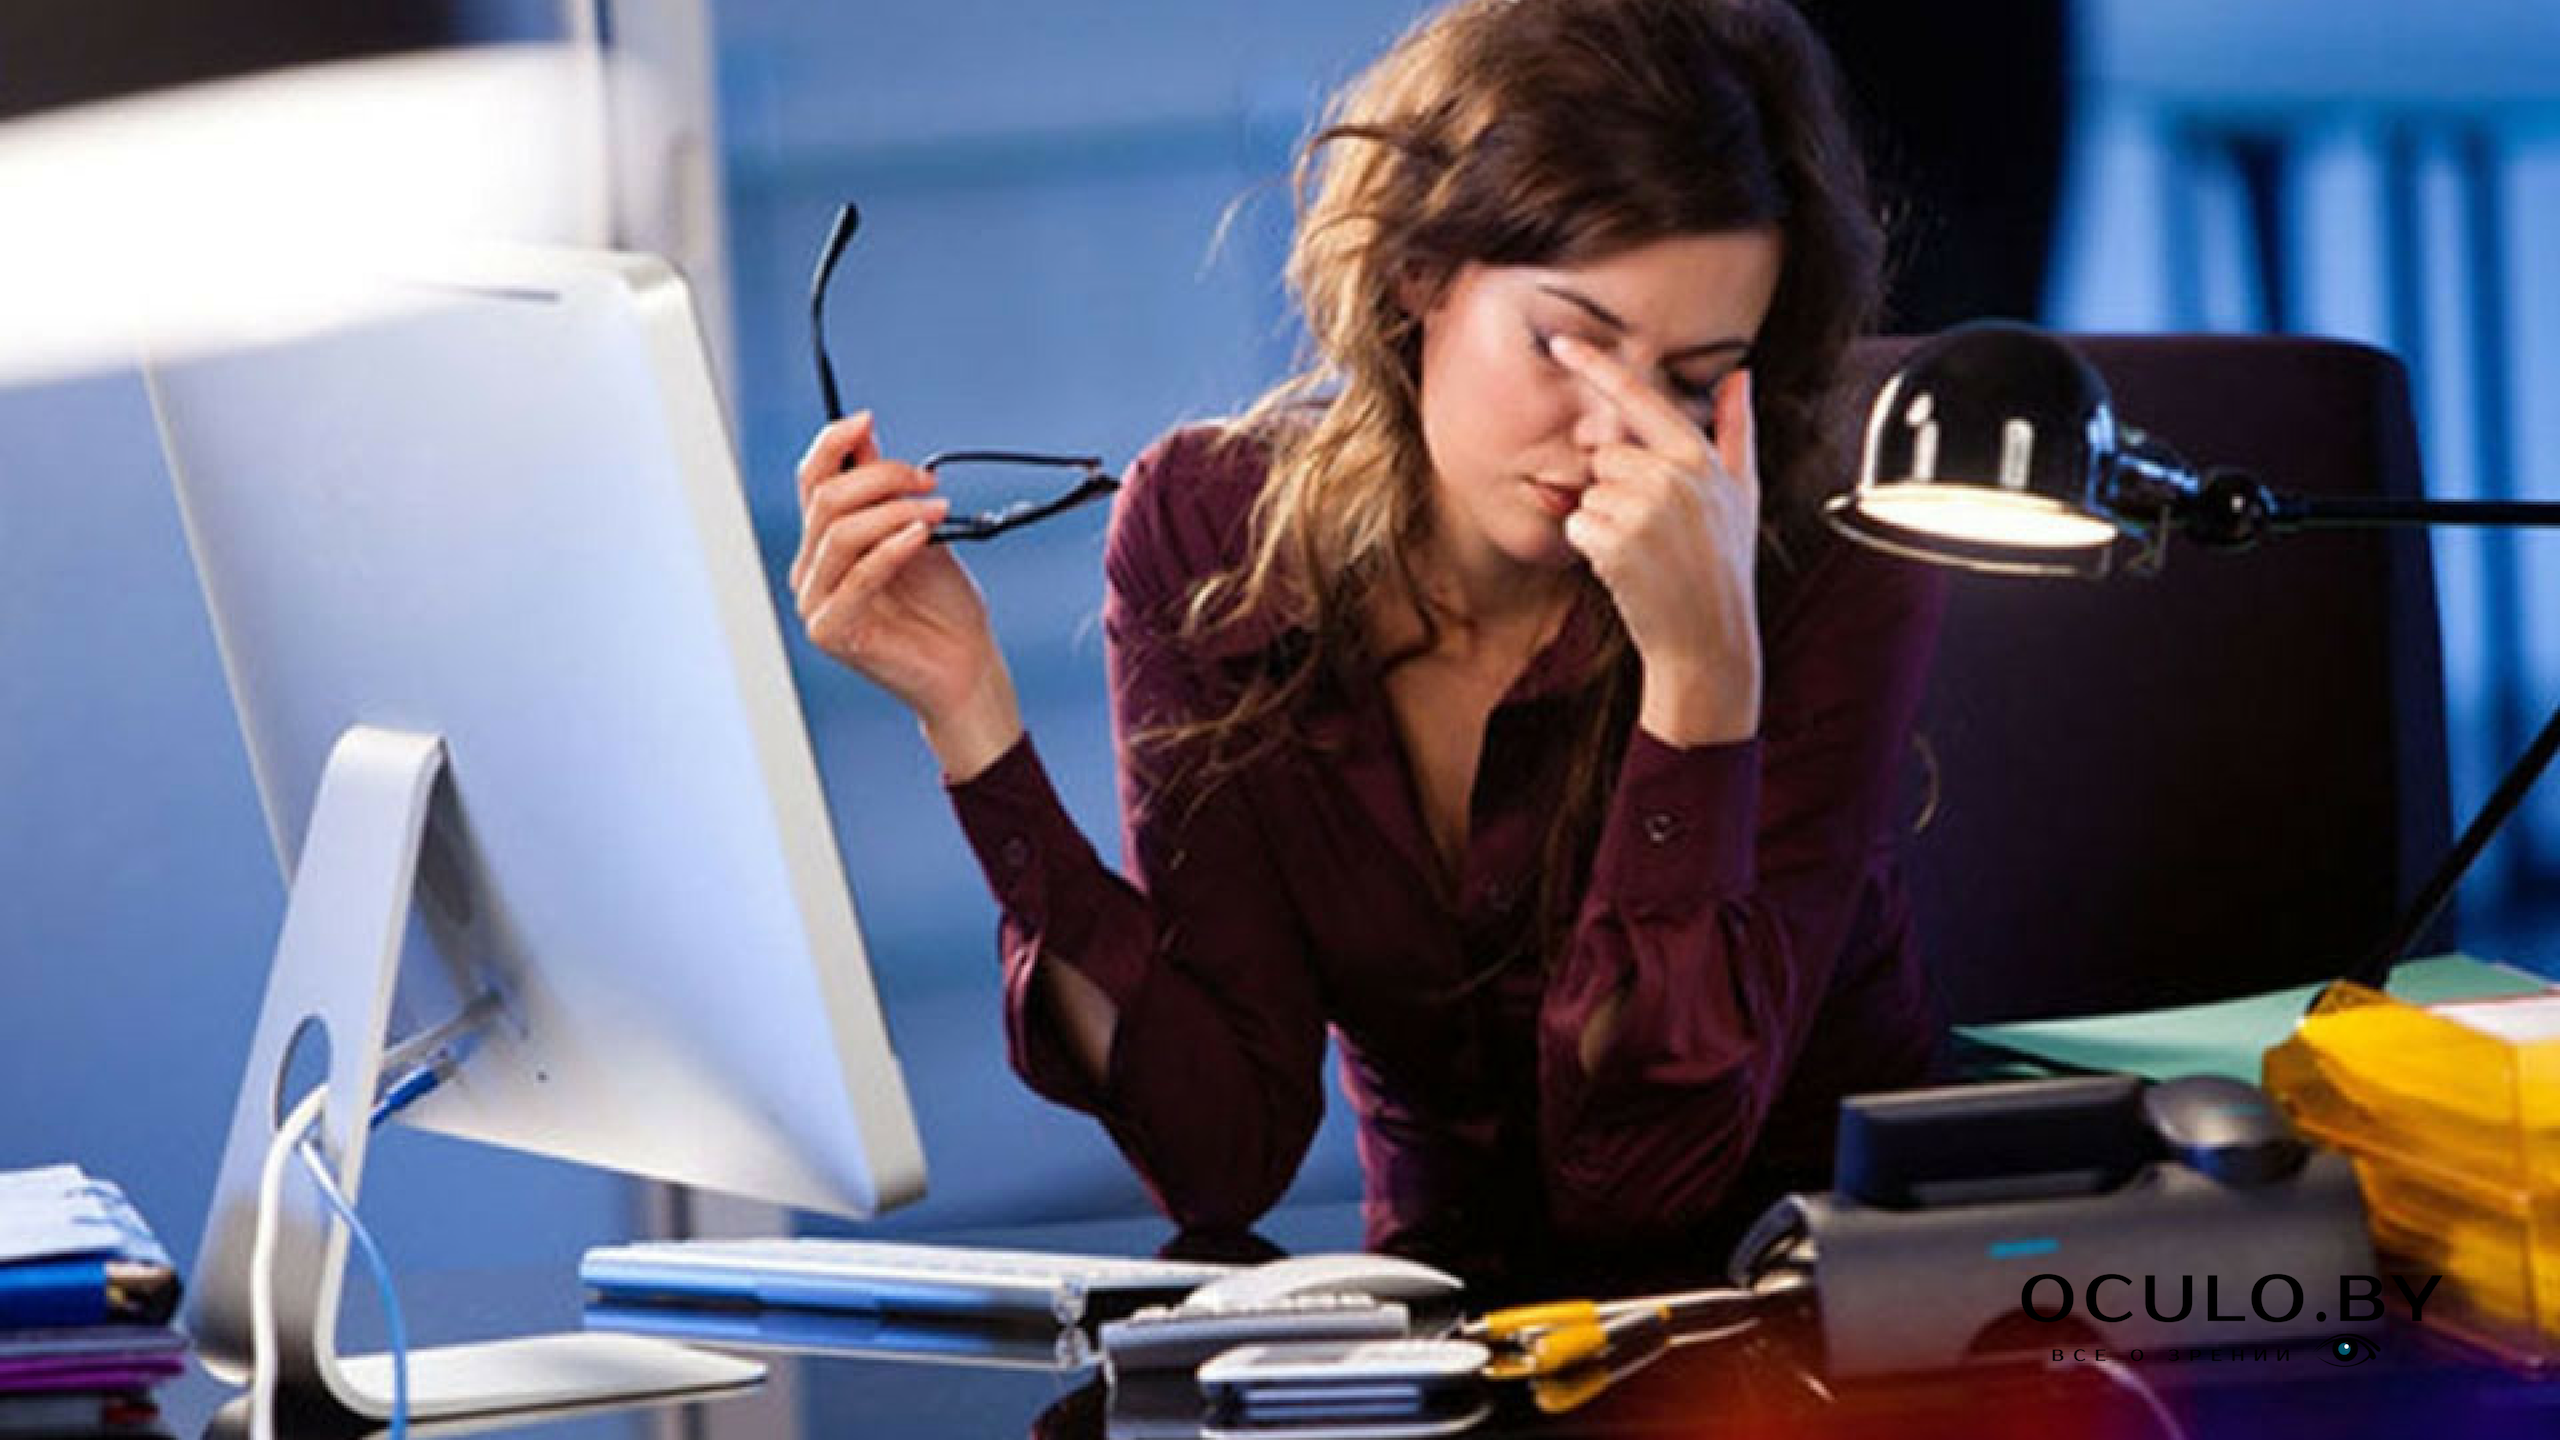 Компьютер и зрение. Воздействие компьютера на зрение. Уставшая девушка в офисе. Человек и компьютер усталость.